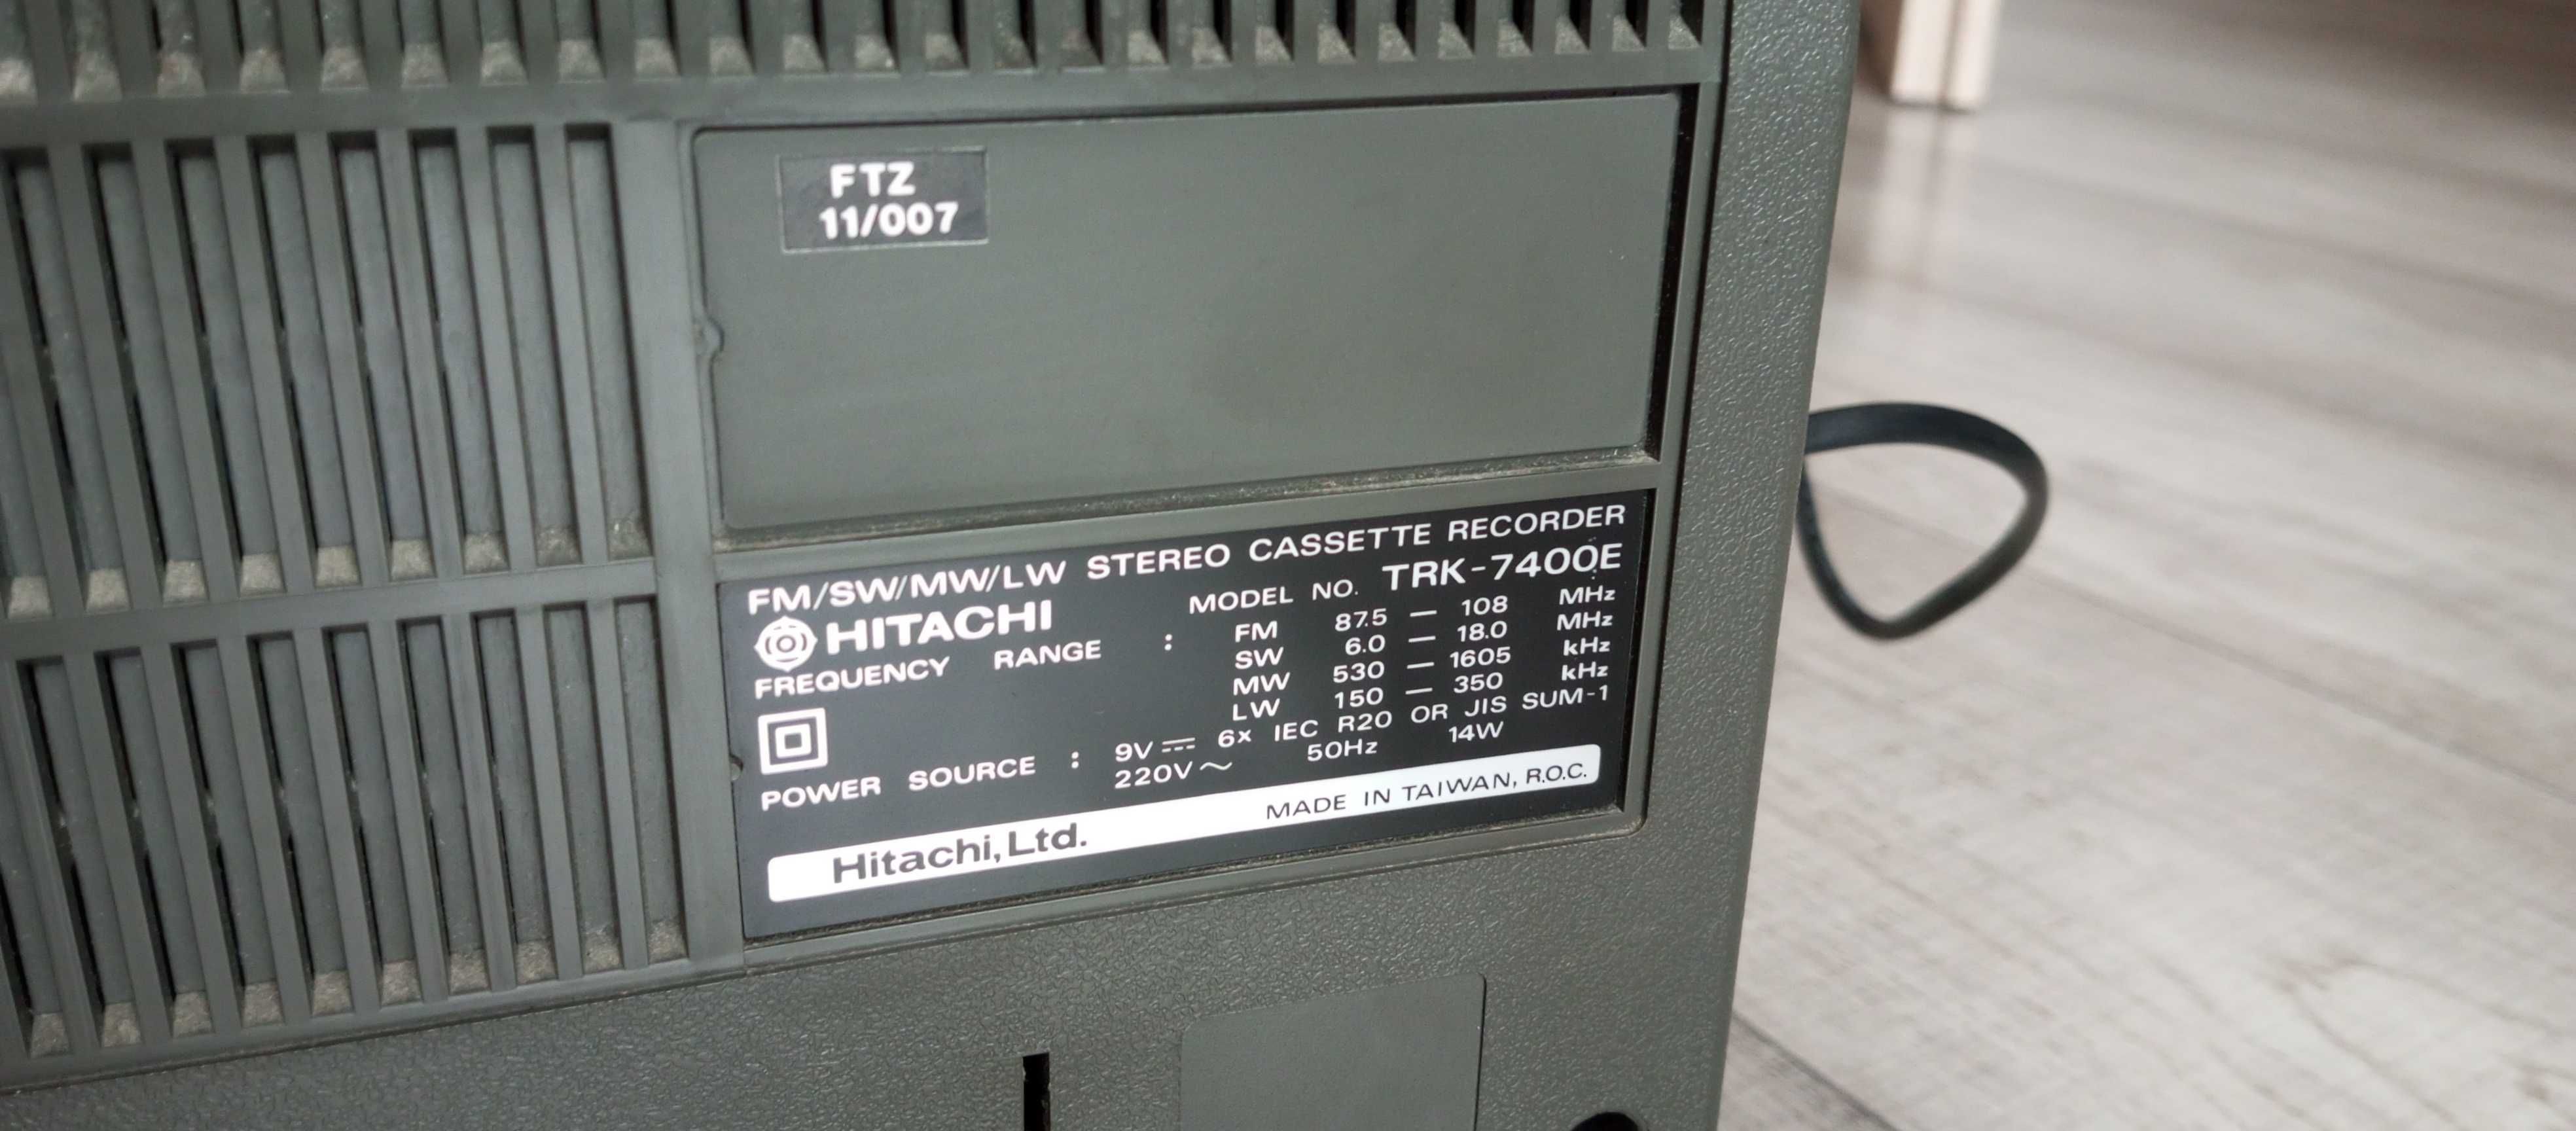 Hitachi TRK - 7400E; boombox